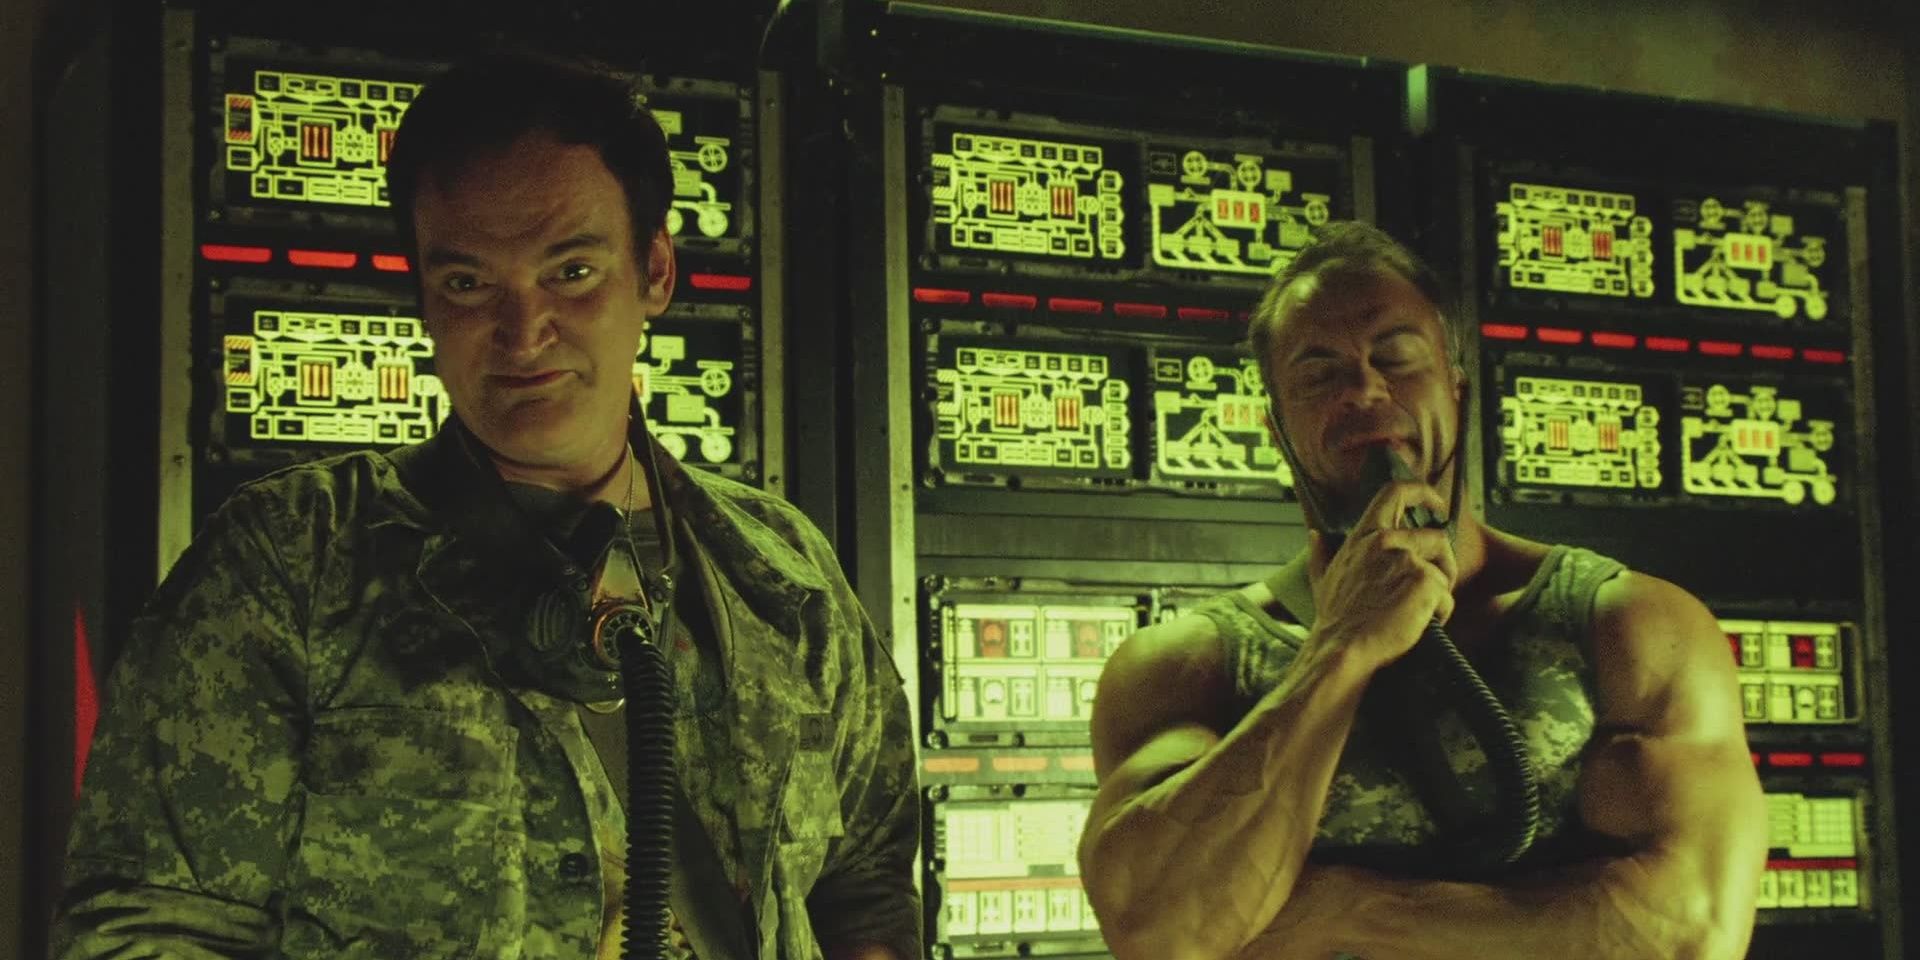 Quentin Tarantino in the movie Planet Terror.